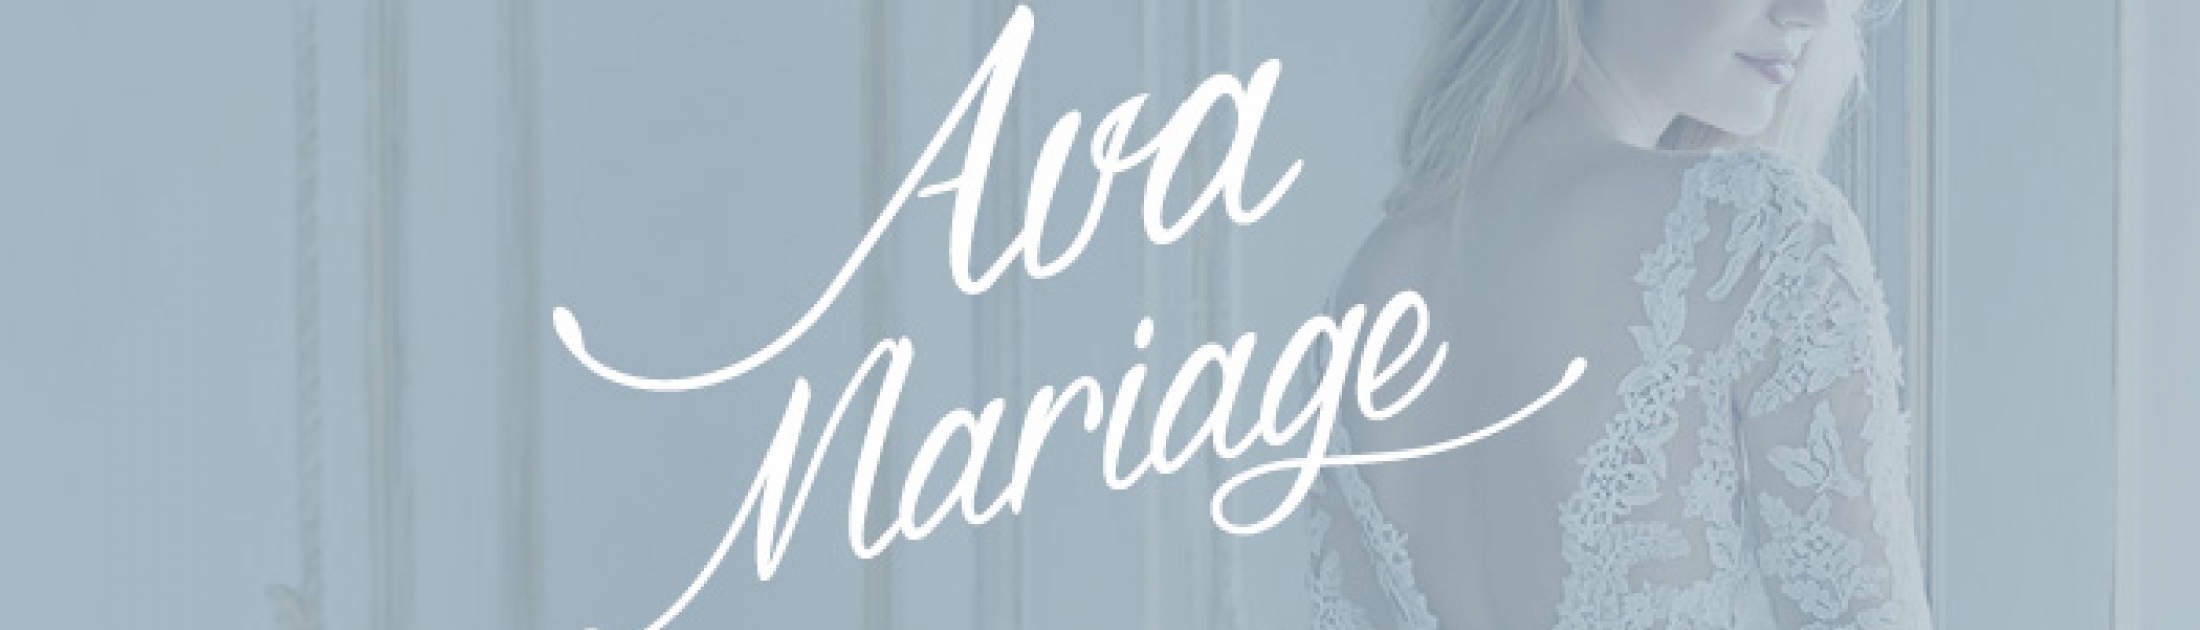 Ava mariage